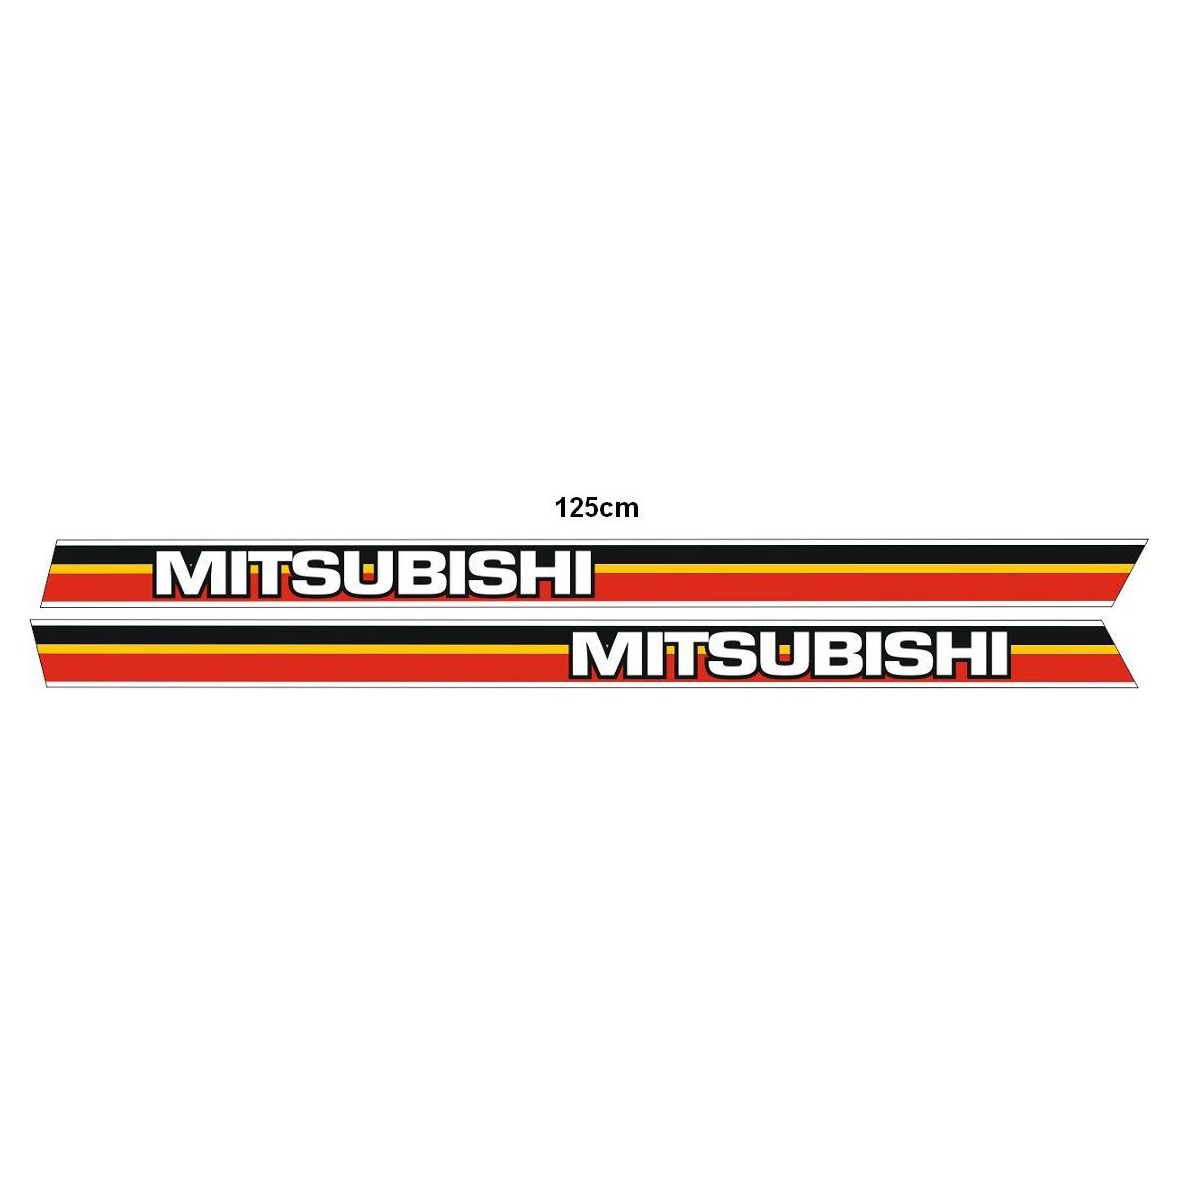 Mitsubishi 125cm Aufkleber